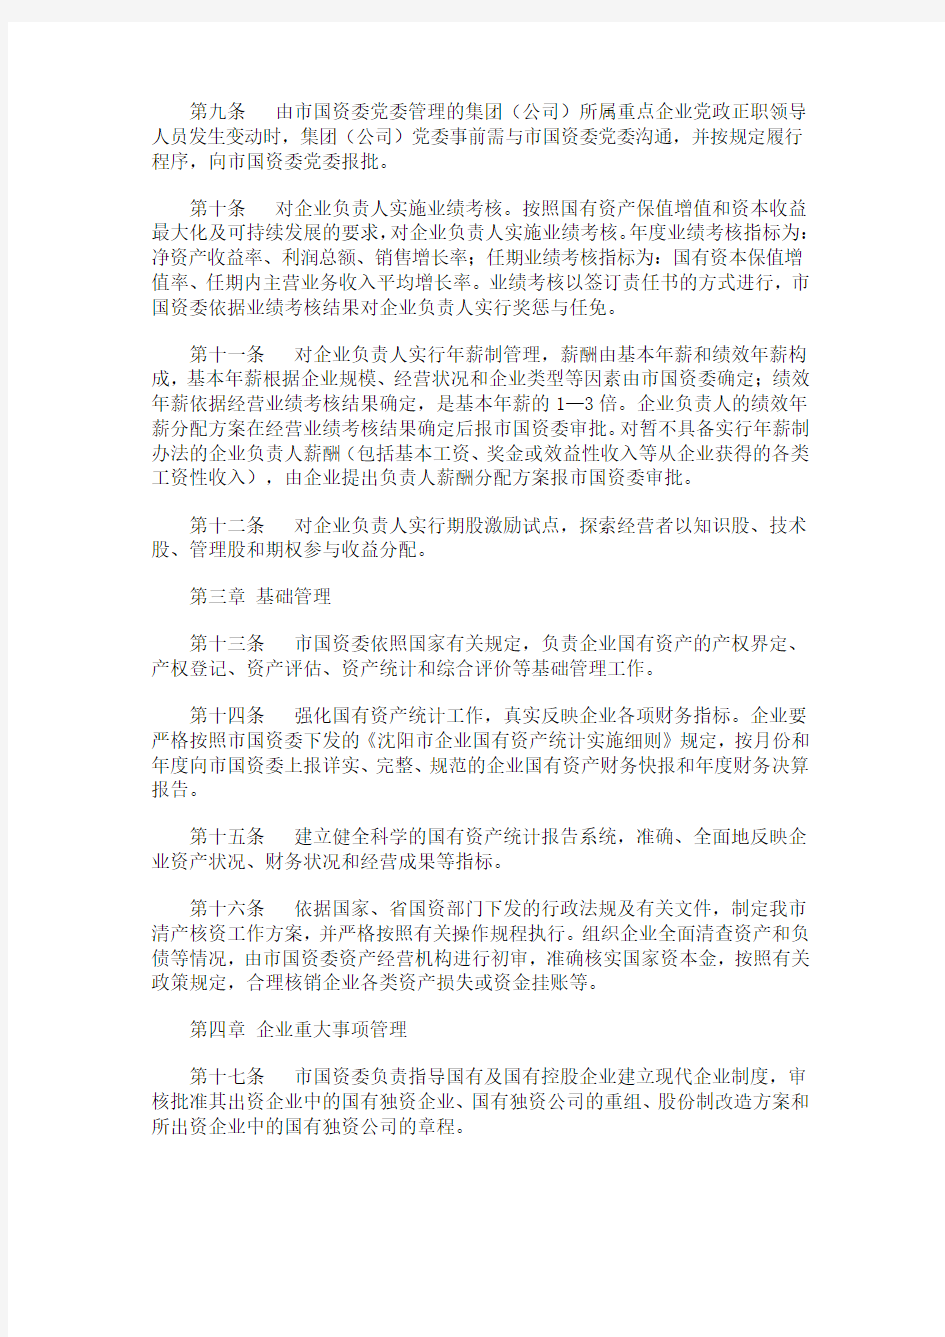 沈阳市人民政府国有资产监督管理委员会对监管企业的监督管理办法